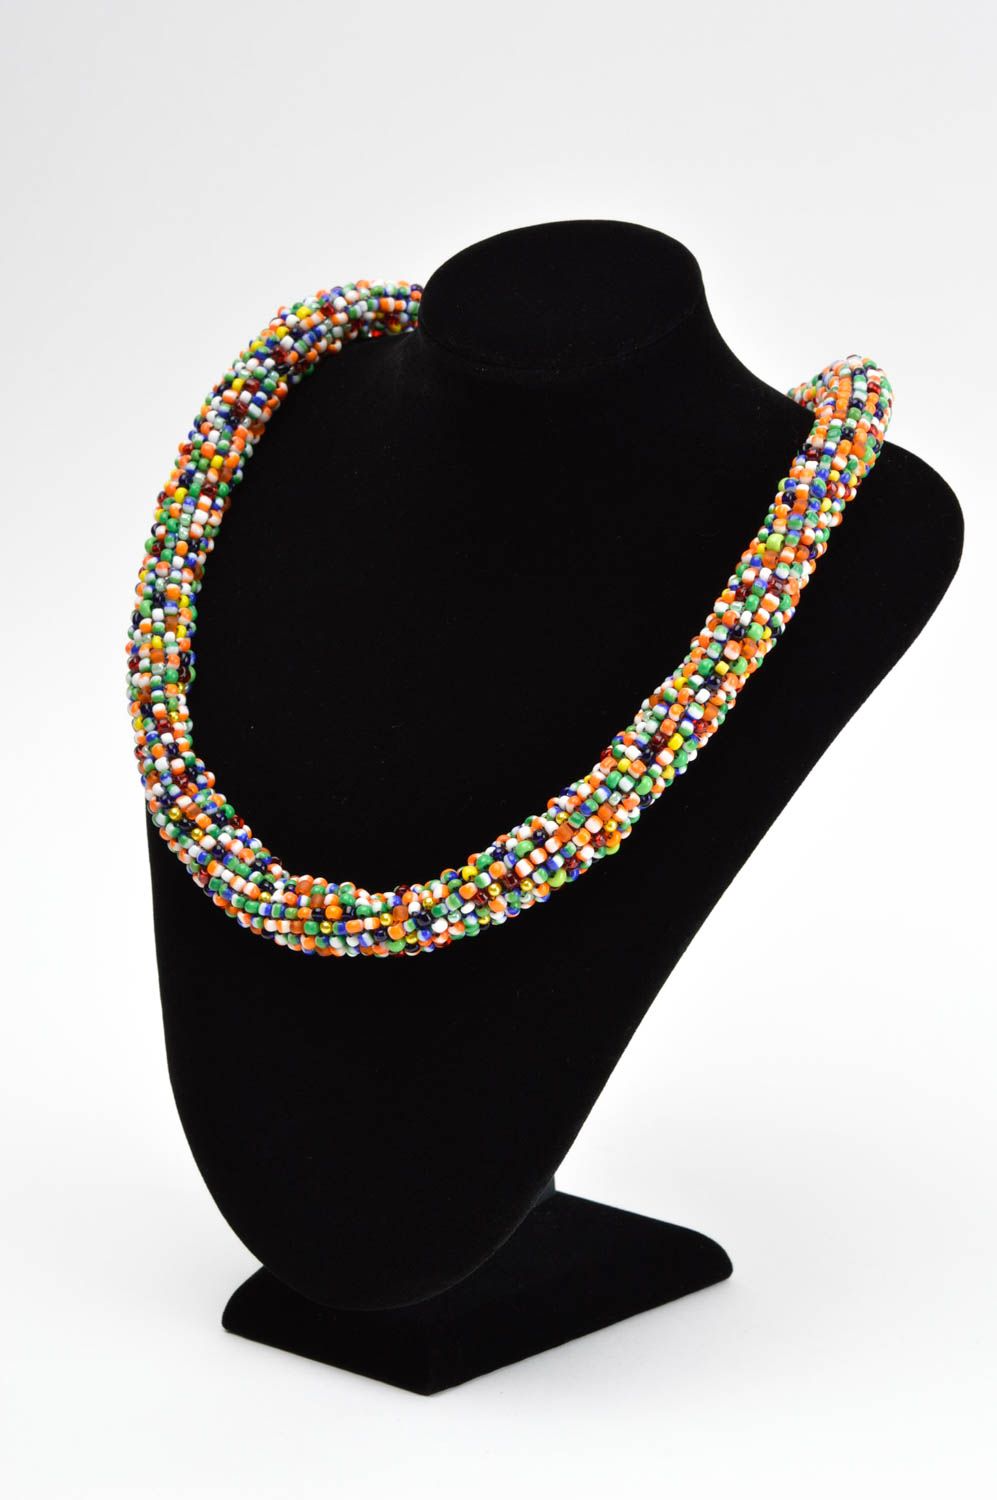 Жгут из бисера ручной работы разноцветное ожерелье из бисера авторская бижутерия фото 1